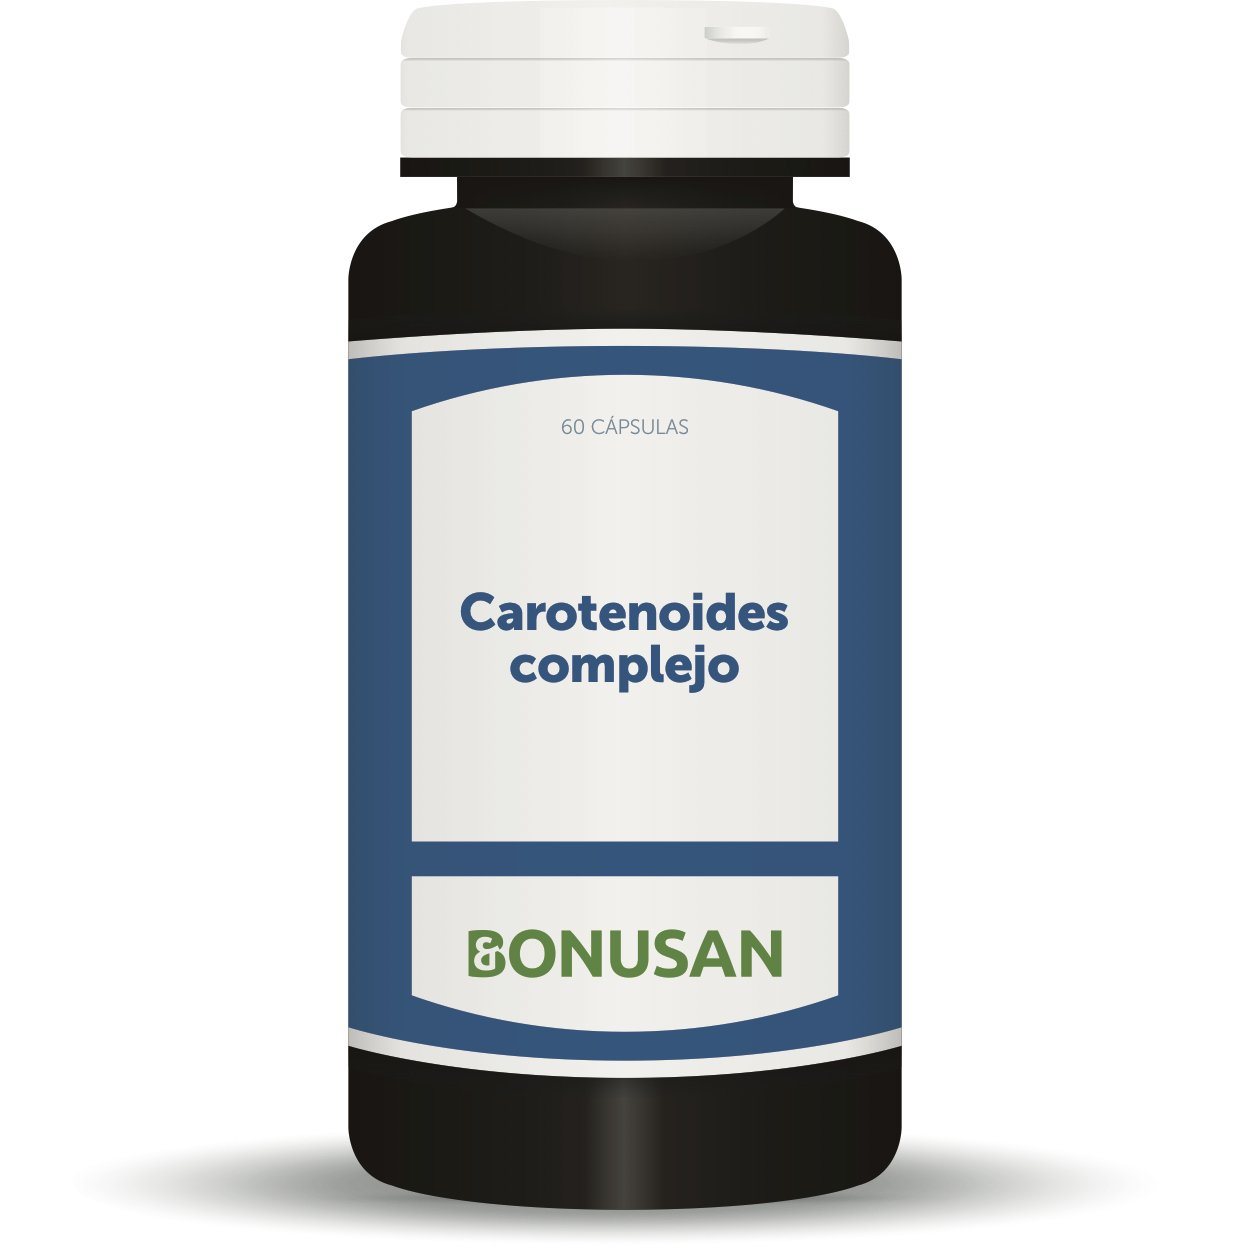 Carotenoides Complejo 60 Capsulas | Bonusan - Dietetica Ferrer